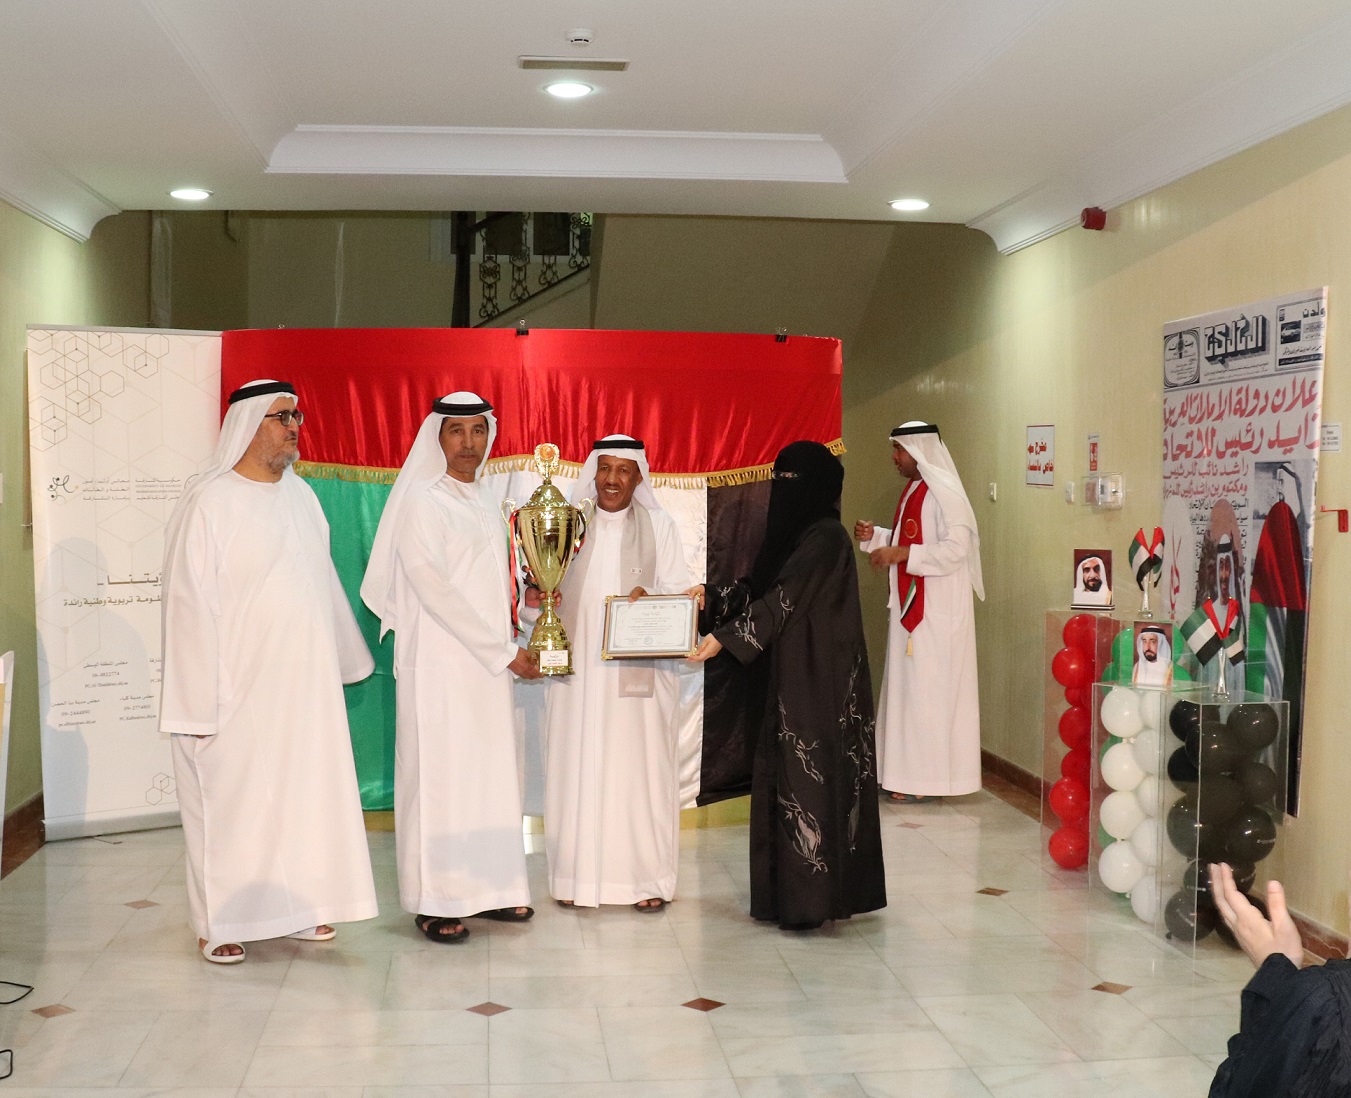 مجلس أولياء أمور الطلبة والطالبات في دبا الحصن  يكرم الفائزين في مبادرة بصمة وطن 